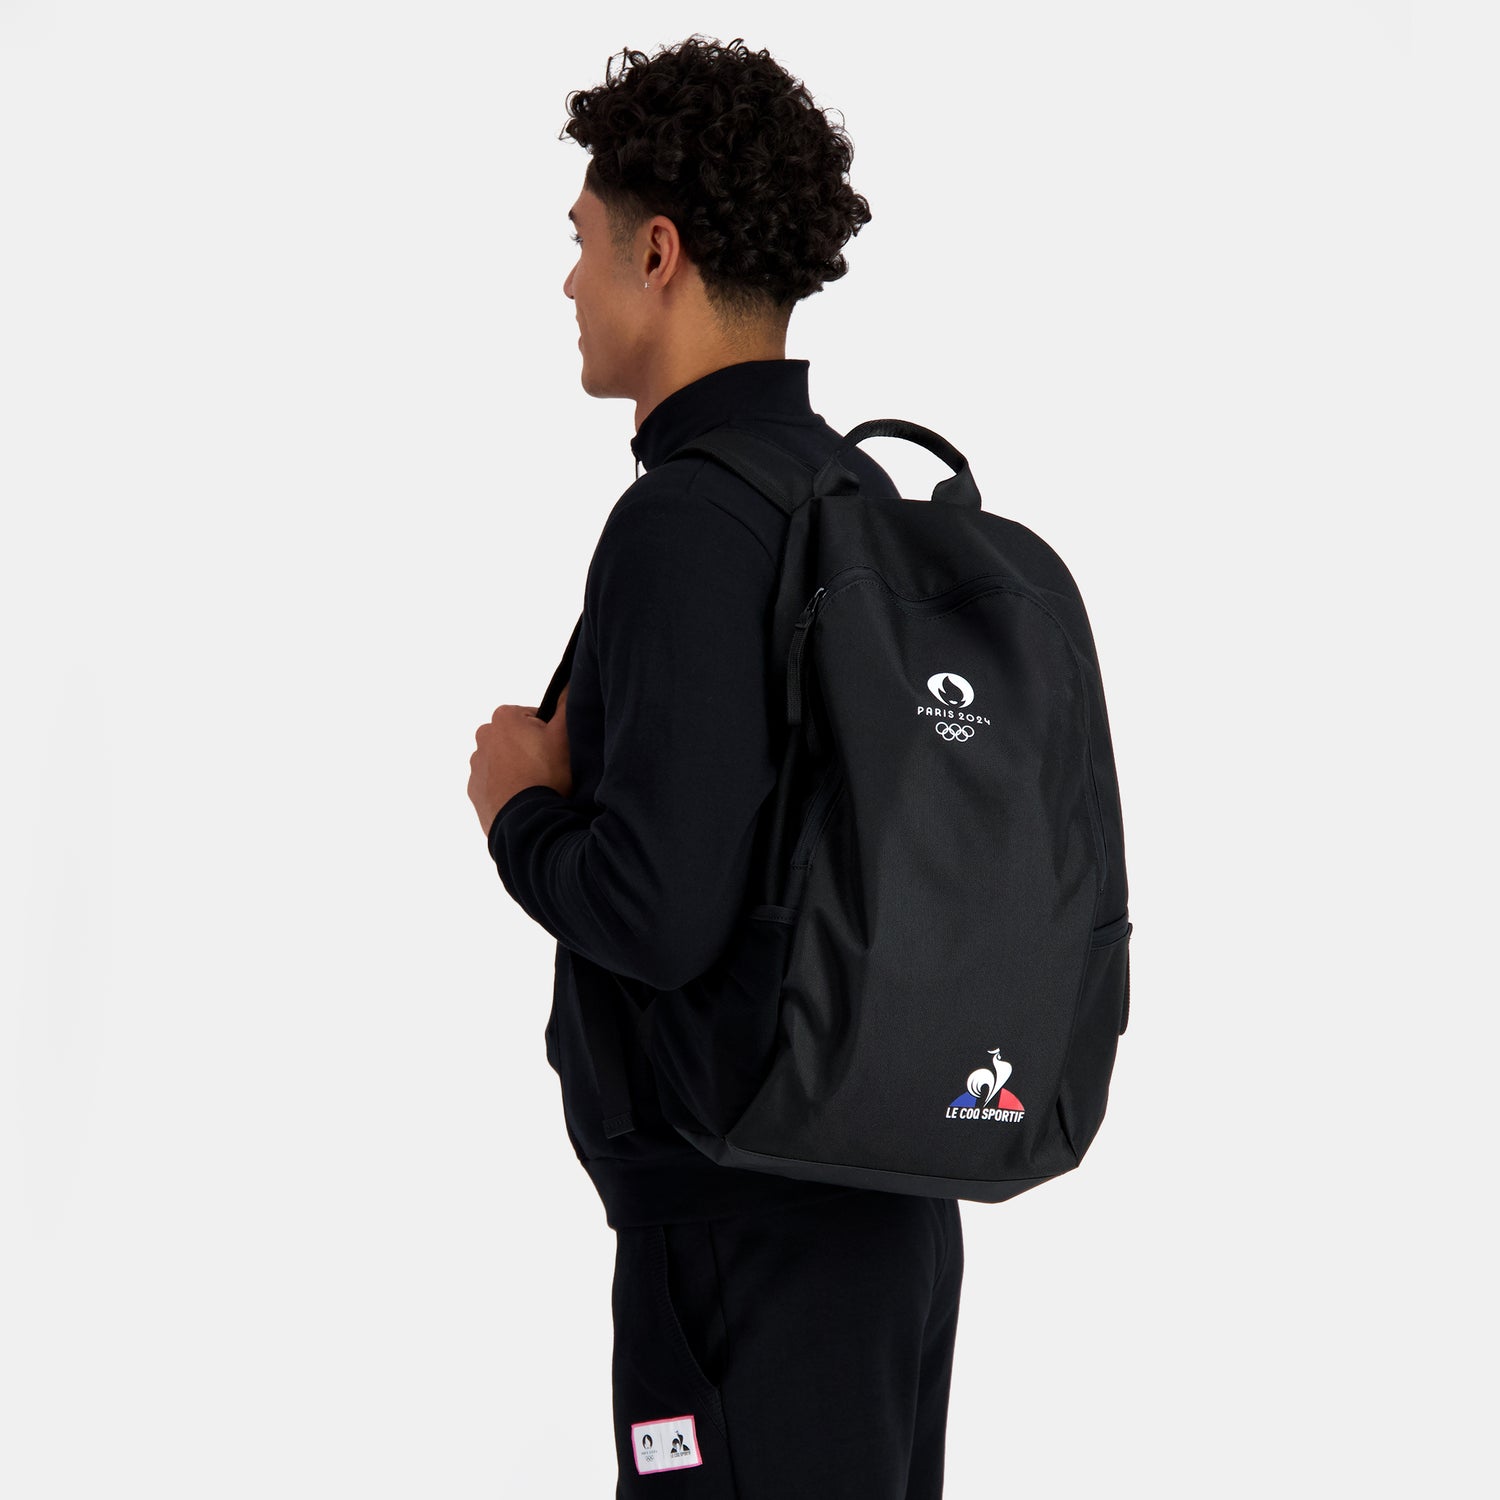 2410543-ESS P24 Sac à dos N°1 black  | Backpack for men